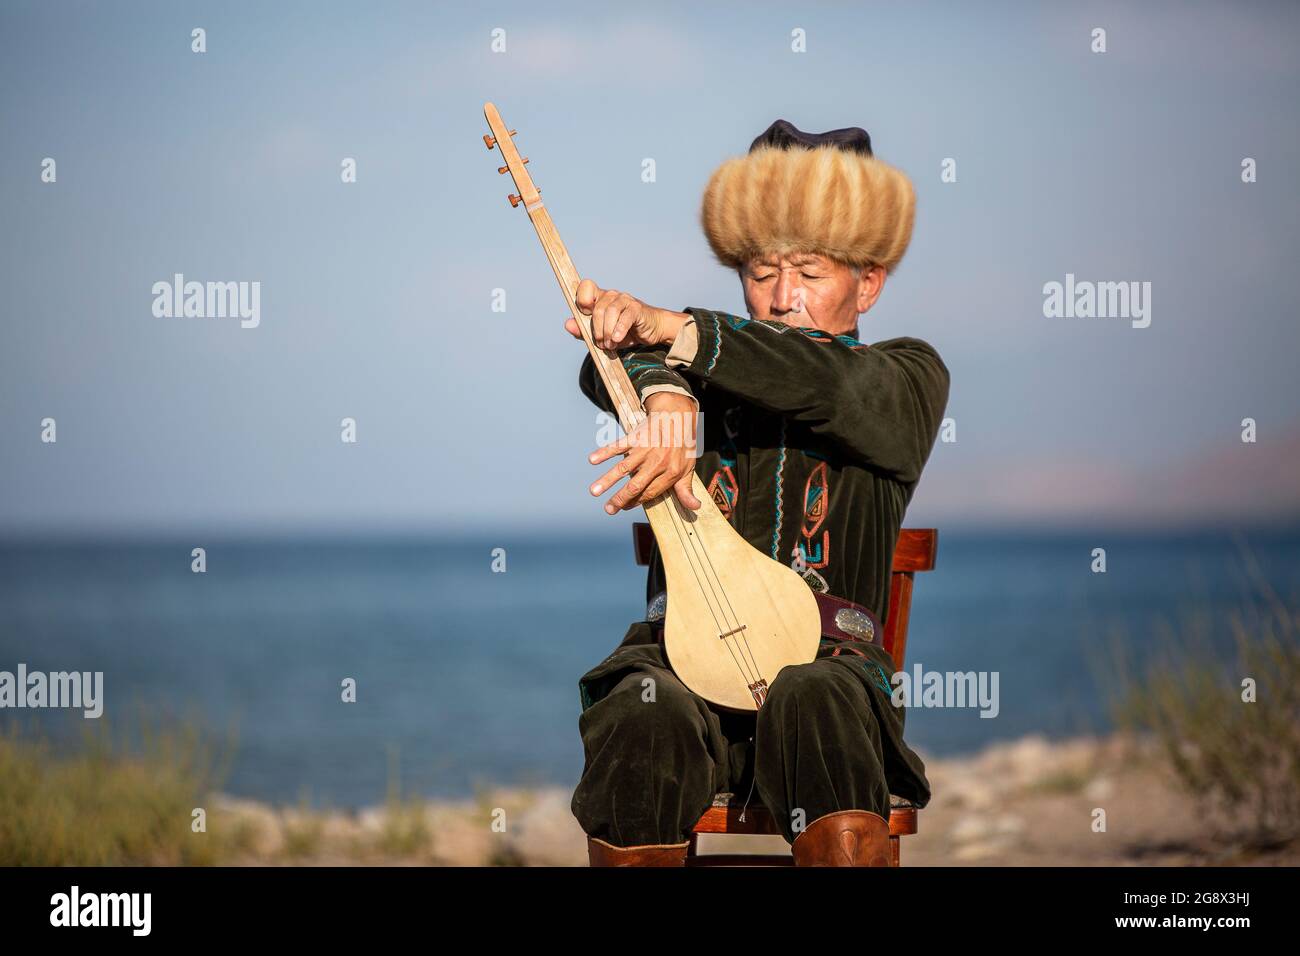 Musicien kirghize jouant un instrument de musique traditionnel connu sous le nom de Komuz à Issyk Kul, Kirghizistan Banque D'Images